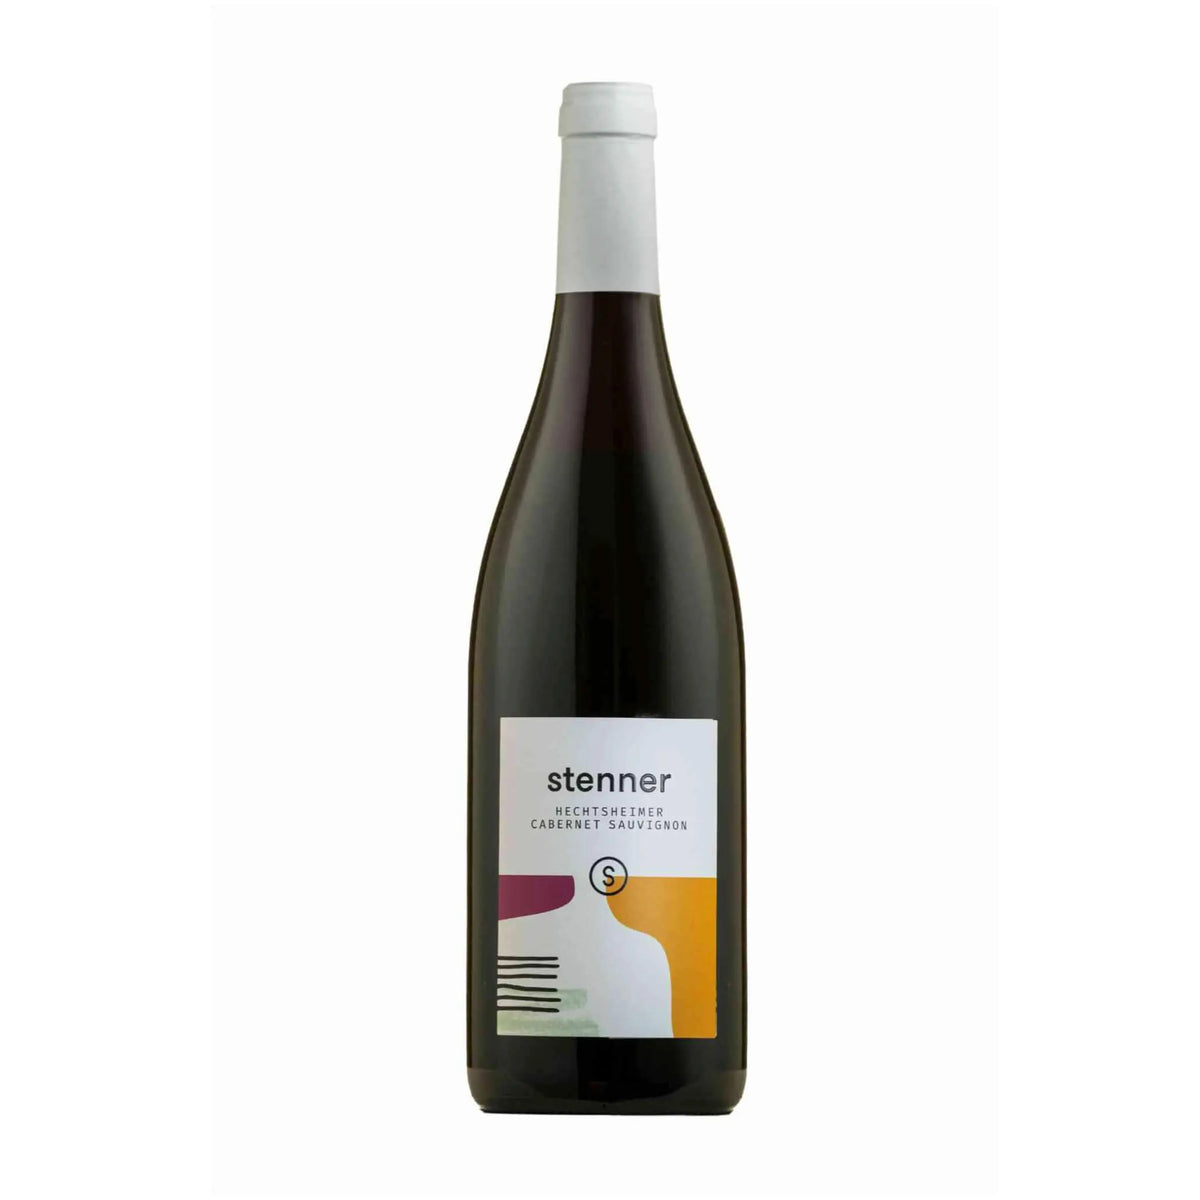 Weingut Stenner-Rotwein-Cabernet Sauvignon-2019 Hechtsheimer Cabernet Sauvignon trocken-WINECOM